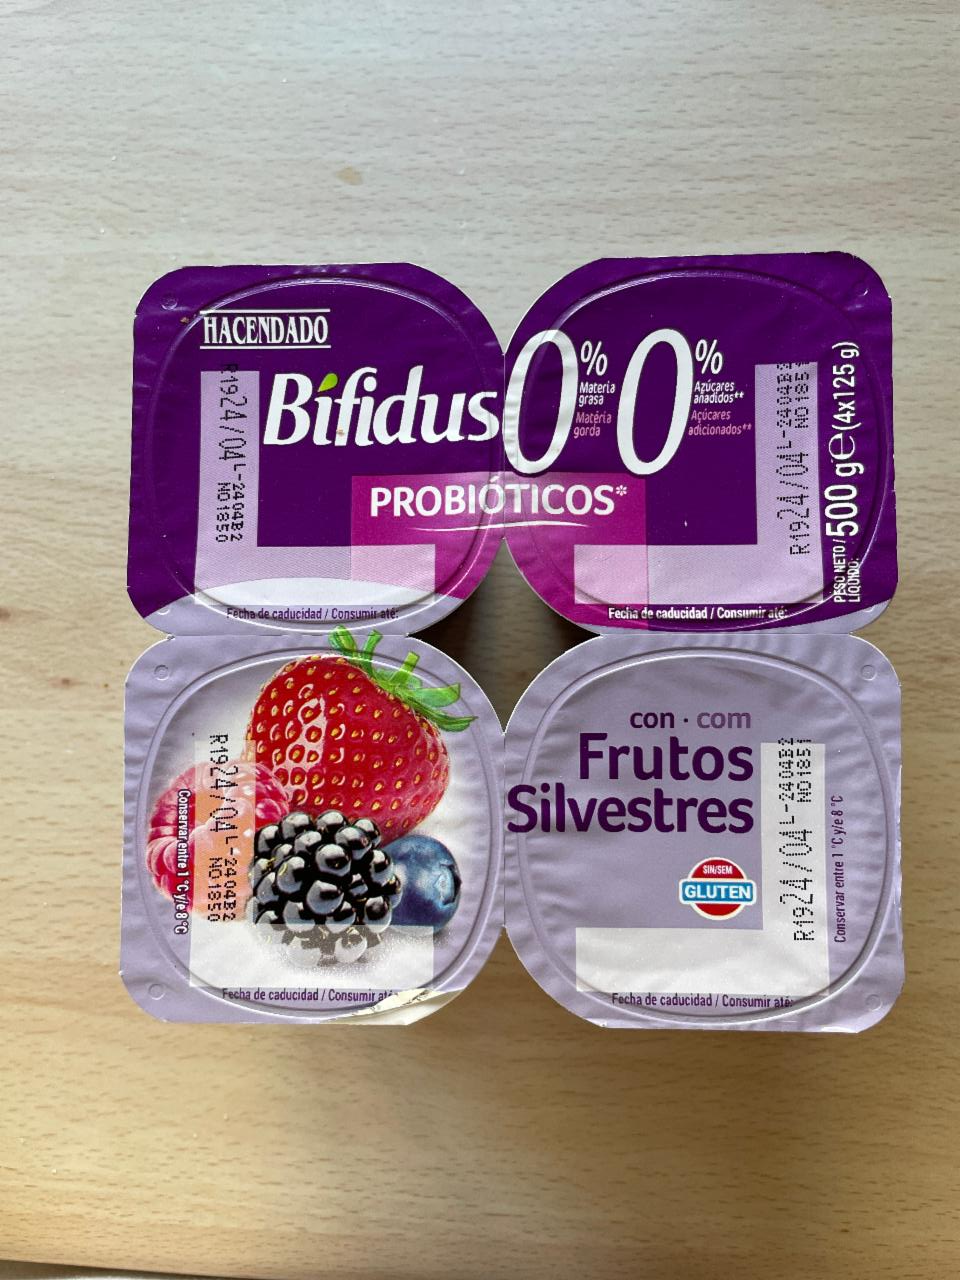 Фото - Bifidus 0% con frutos silvestres Hacendado